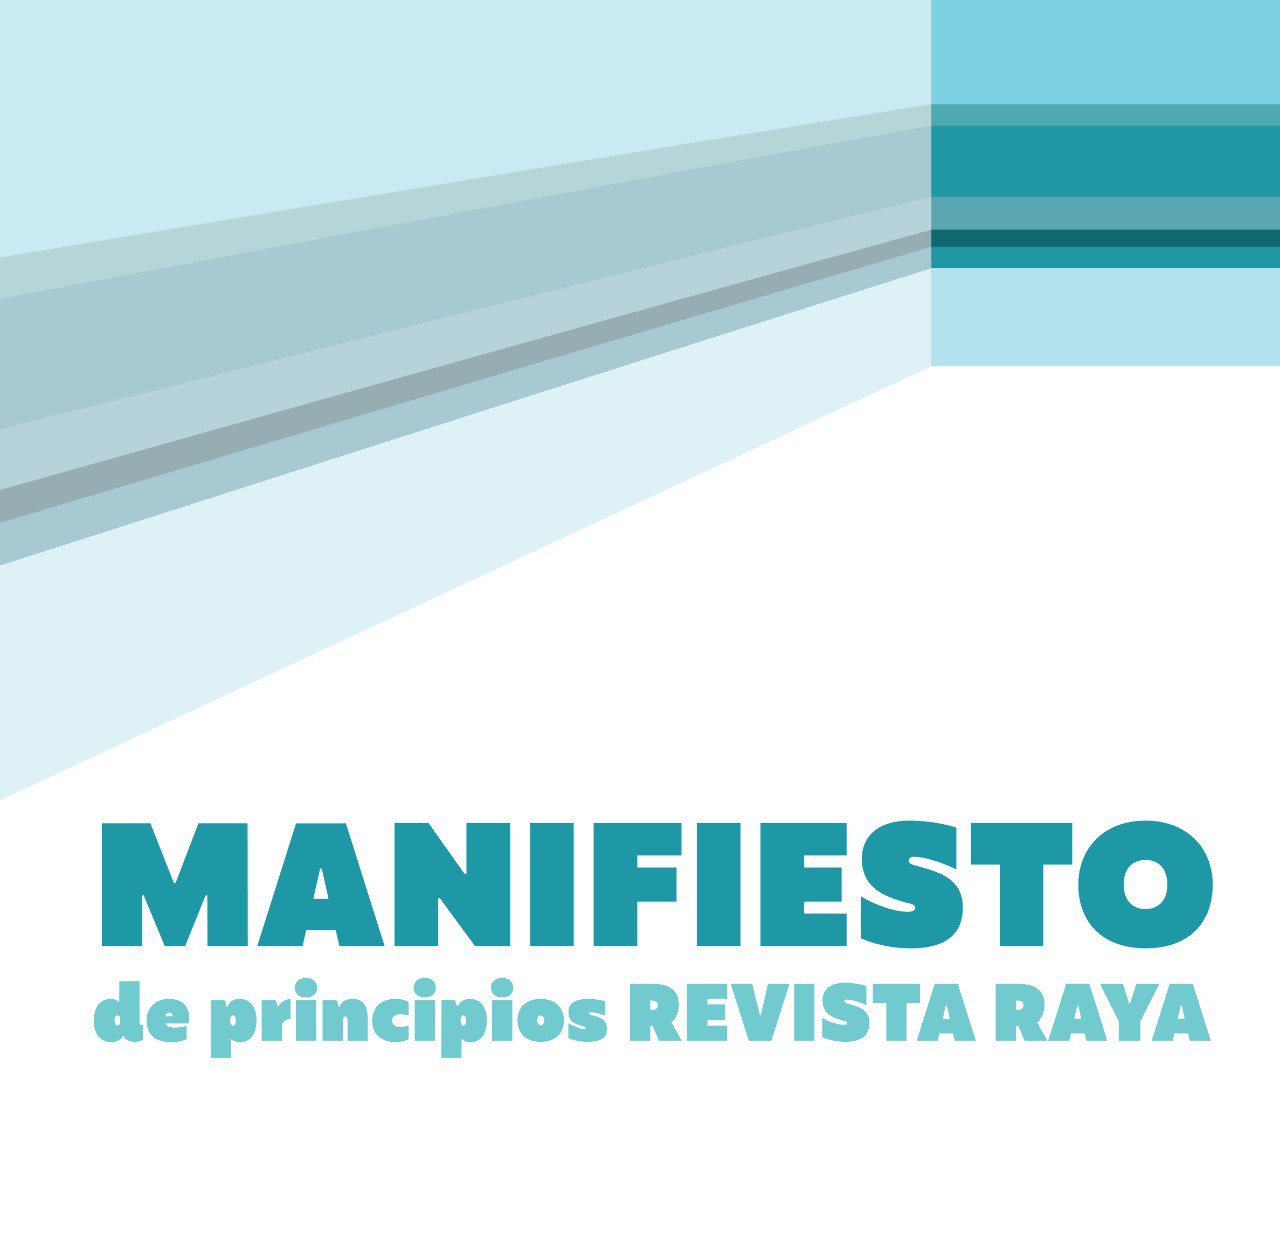 Manifiesto de principios REVISTA RAYA